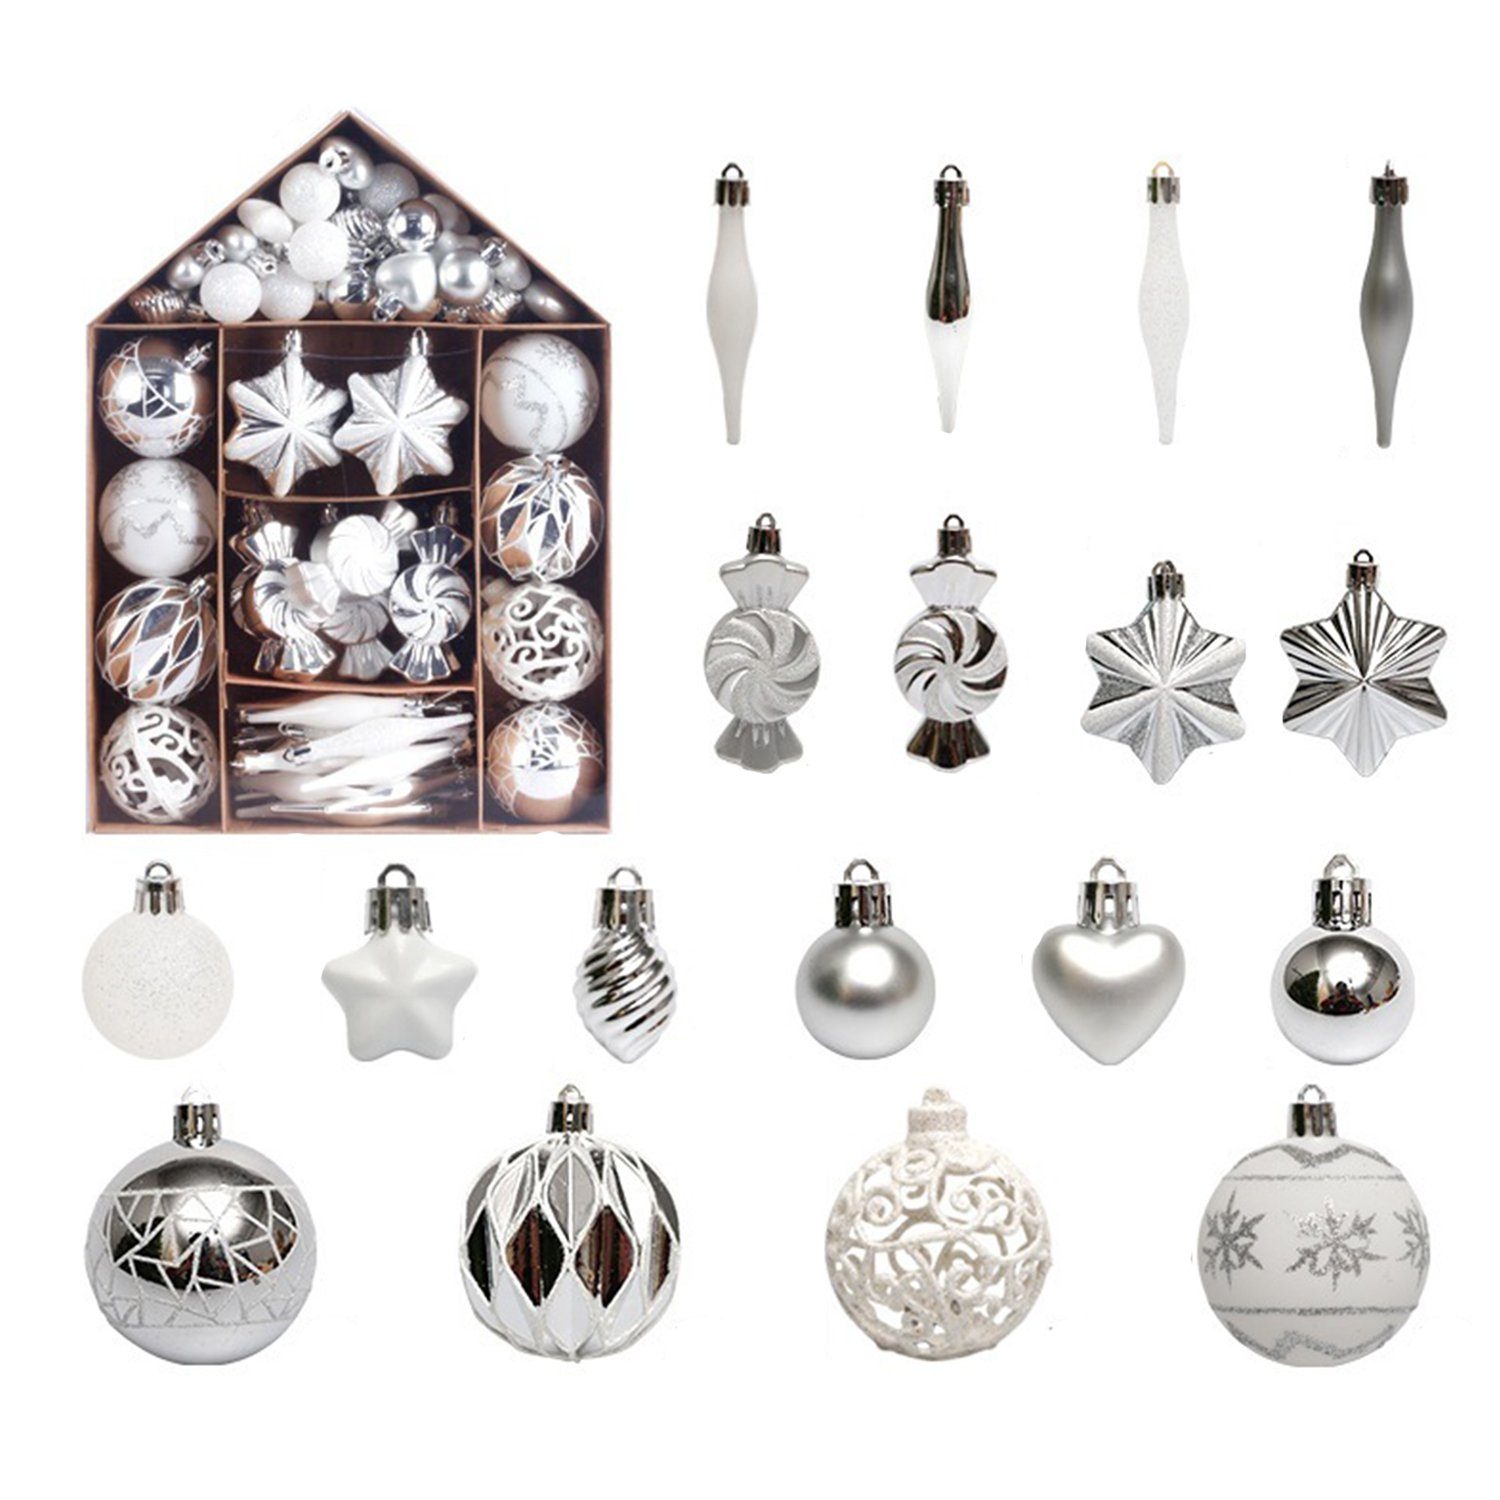 MAGICSHE Weihnachtsbaumkugel Weihnachtsdeko Ornamente-Set 73tlg Silber/Weiß